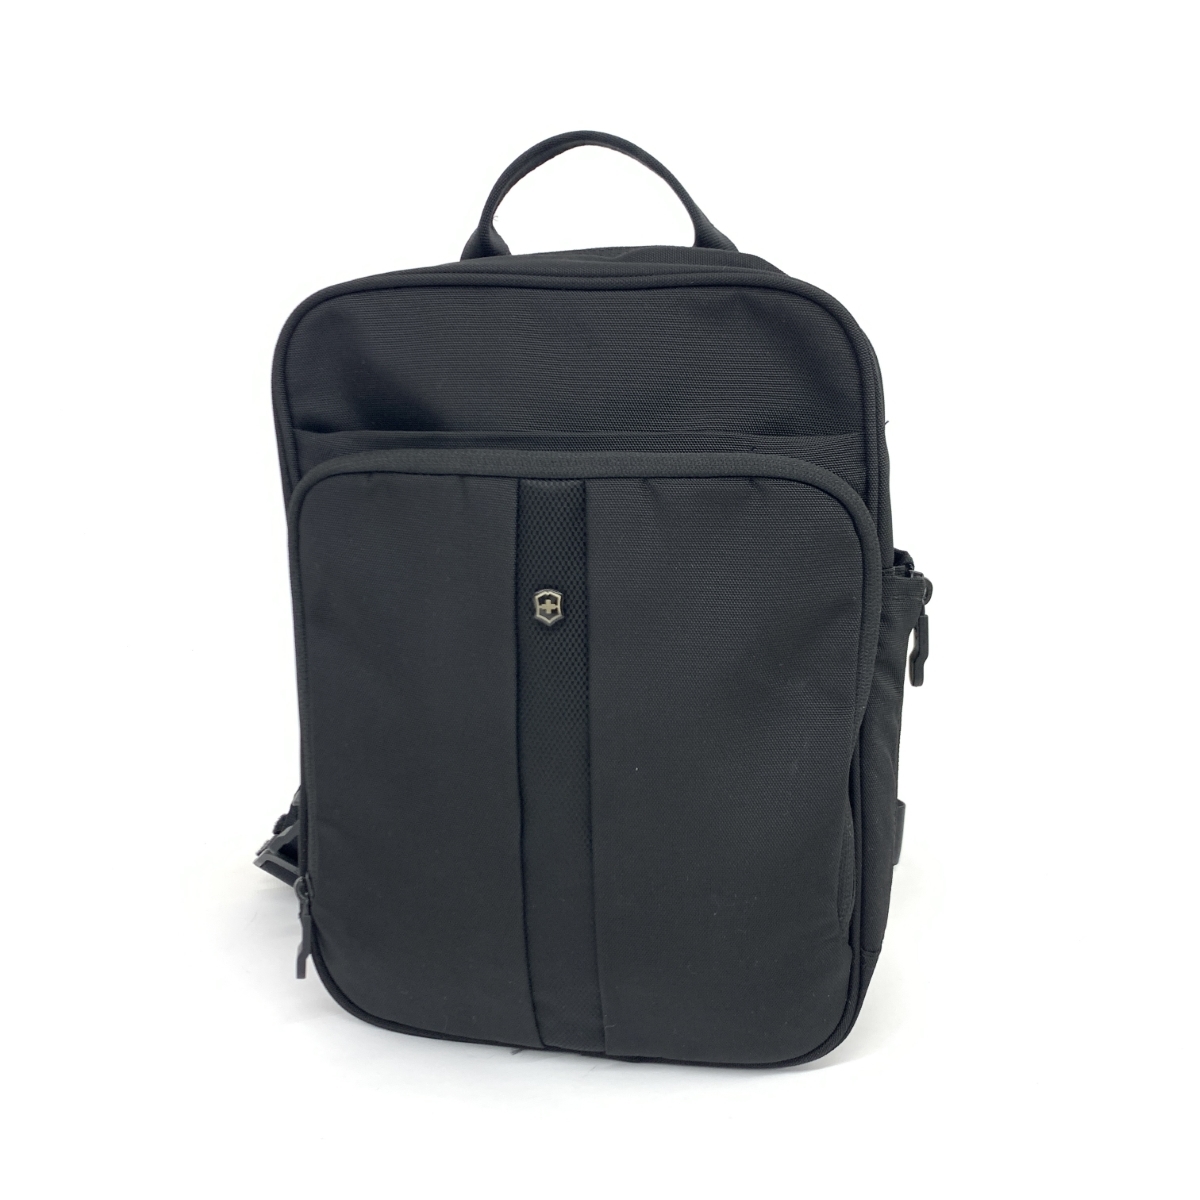 良好◆VICTORINOX ヴィクトリノックス リュックサック◆ ブラック ナイロン レディース フレックスパック bag 鞄